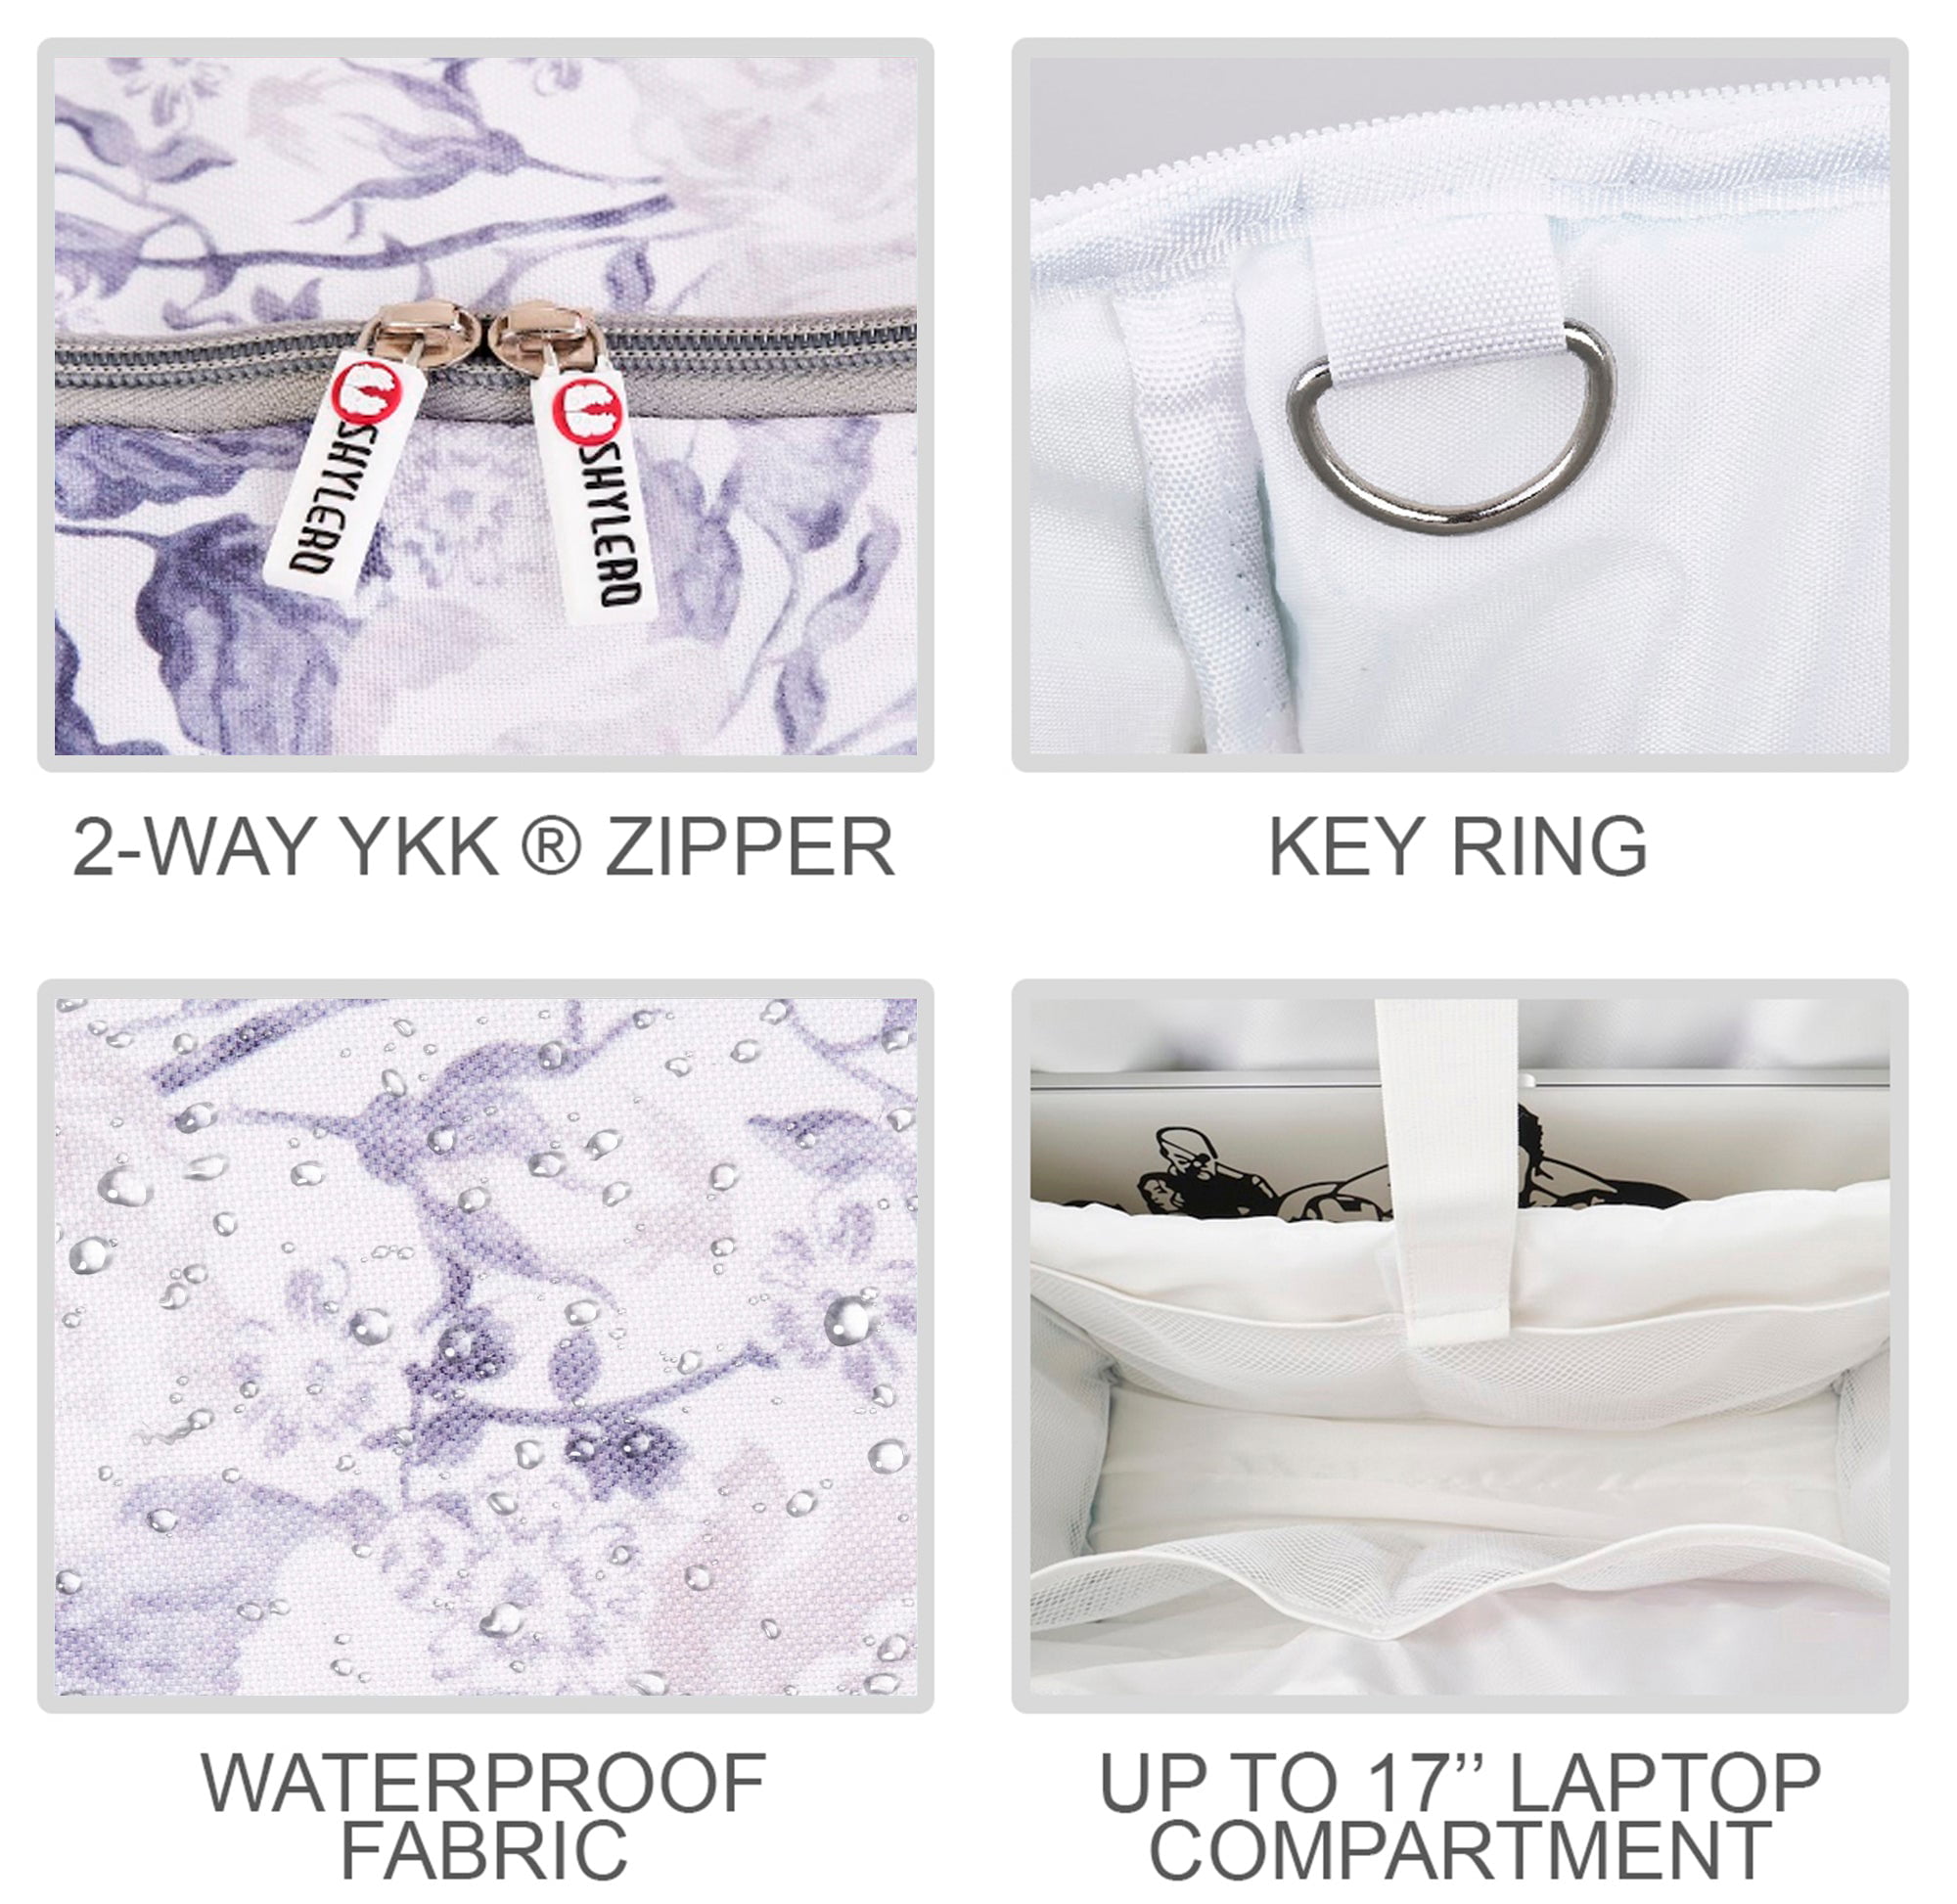 Nurse Bag and Utility Tote, Waterproof, Top YKK® Zip